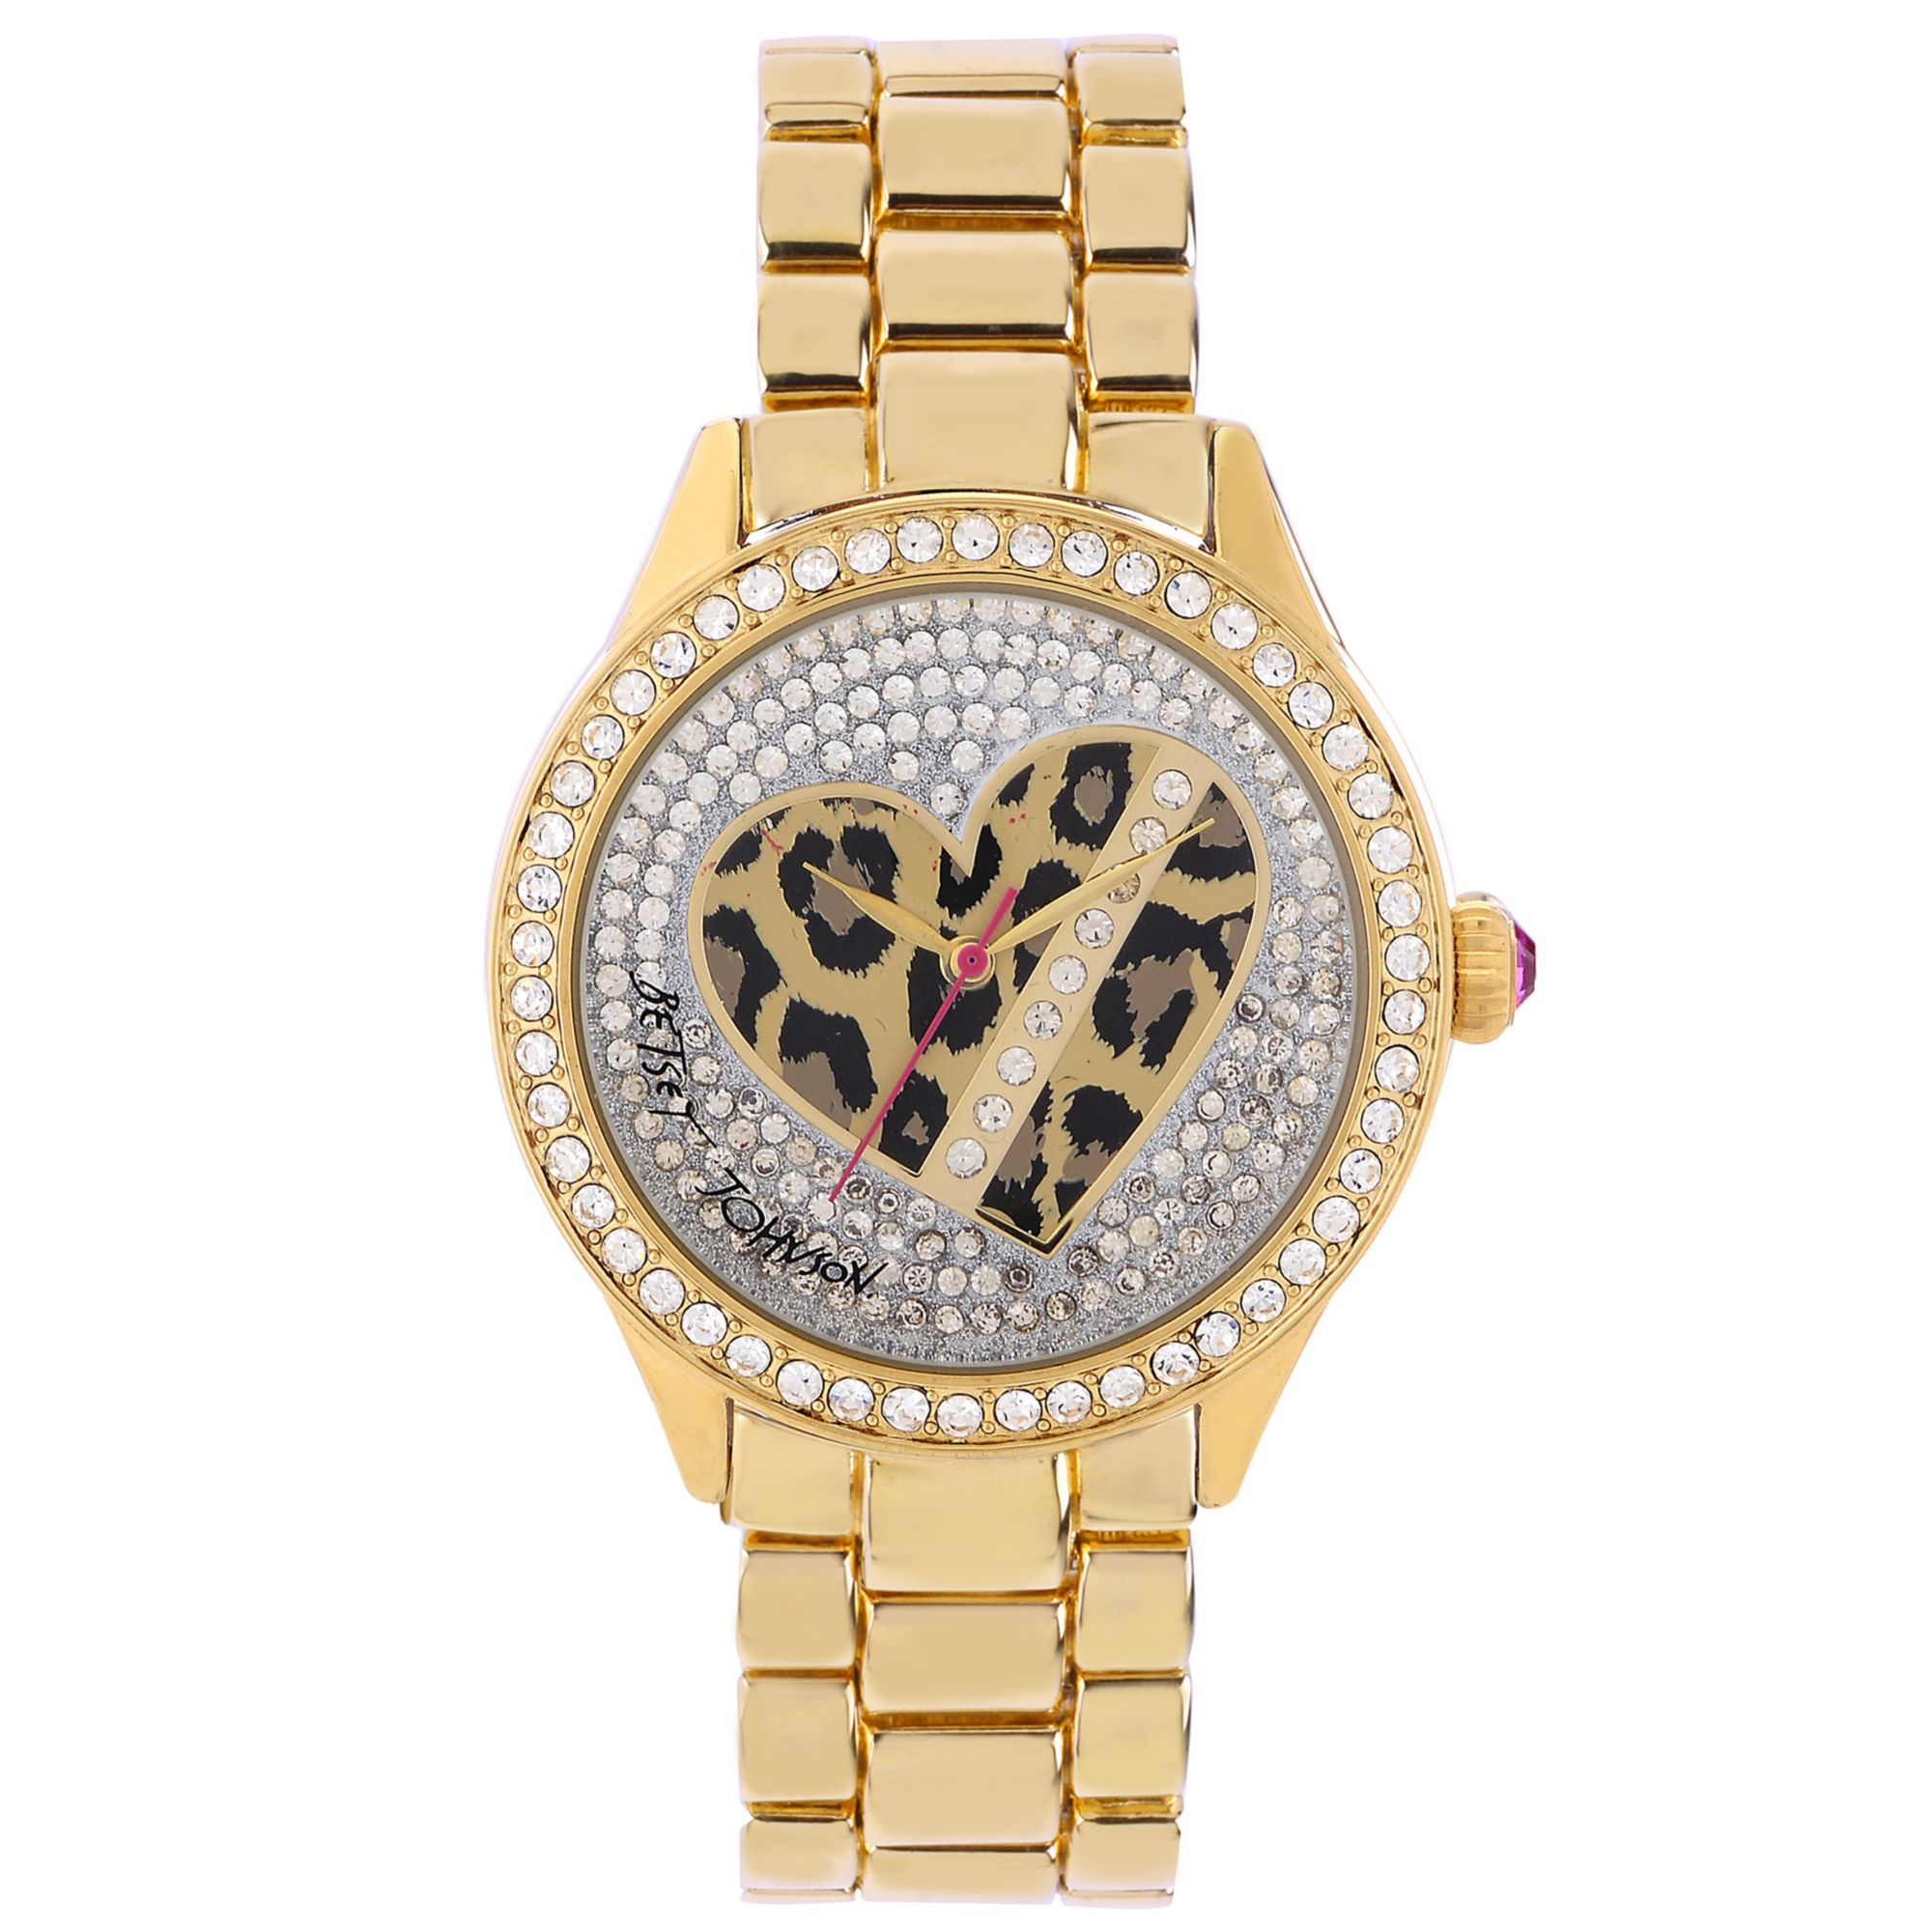 Lyst - Betsey johnson Womens Goldtone Bracelet Watch 42mm 20 in Metallic